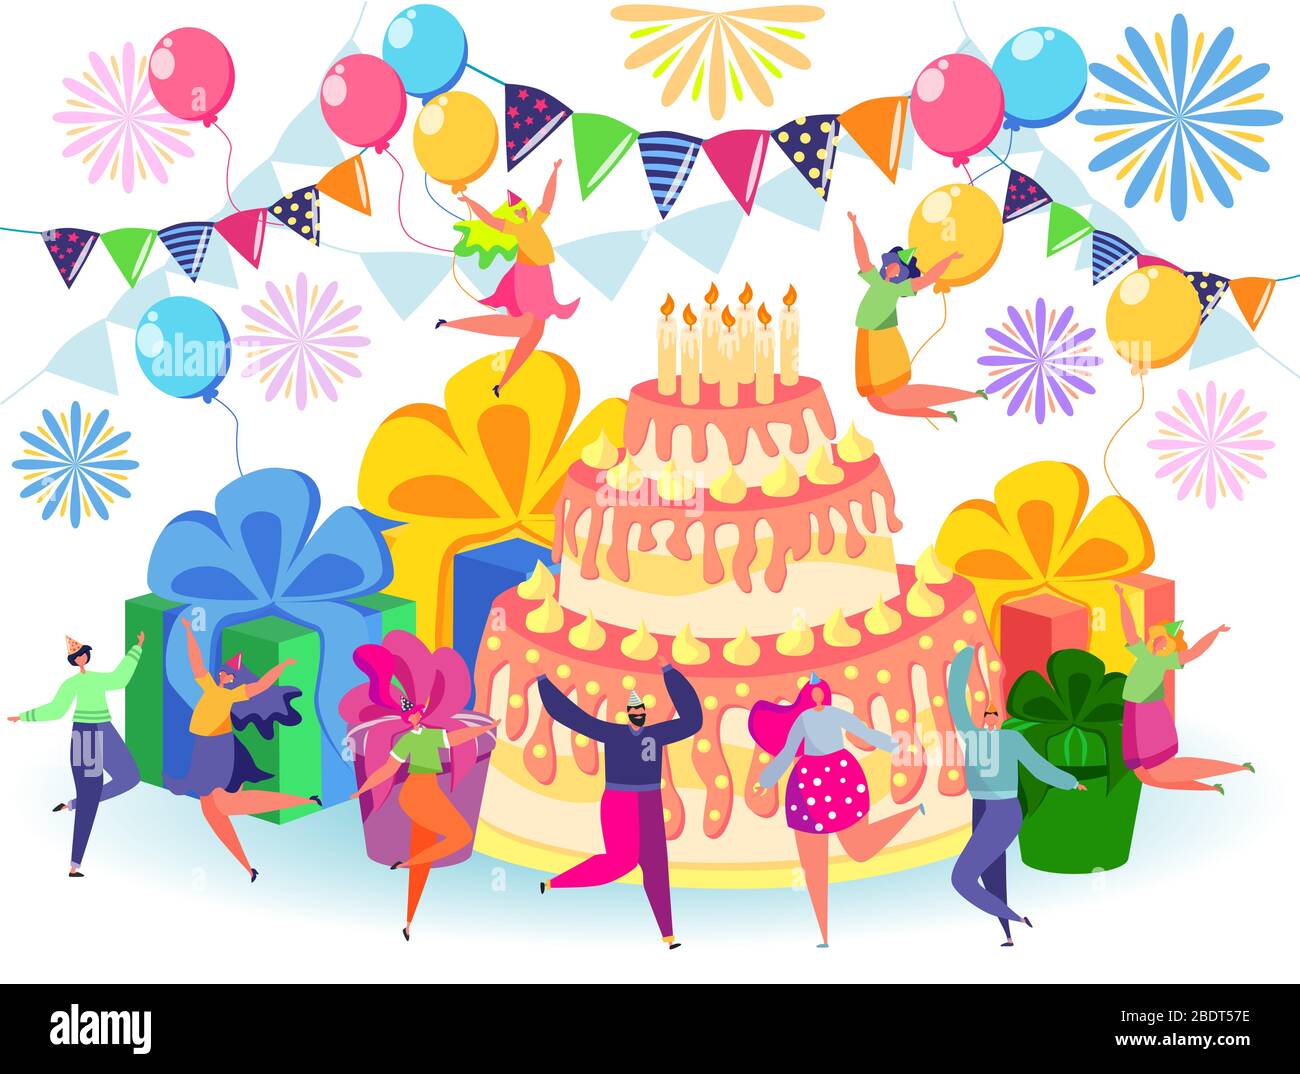 Buon Compleanno Festeggiamenti Con Gli Amici Confetti Per L Anniversario Con Allegri E Divertenti Cartoni Animati Immagine E Vettoriale Alamy